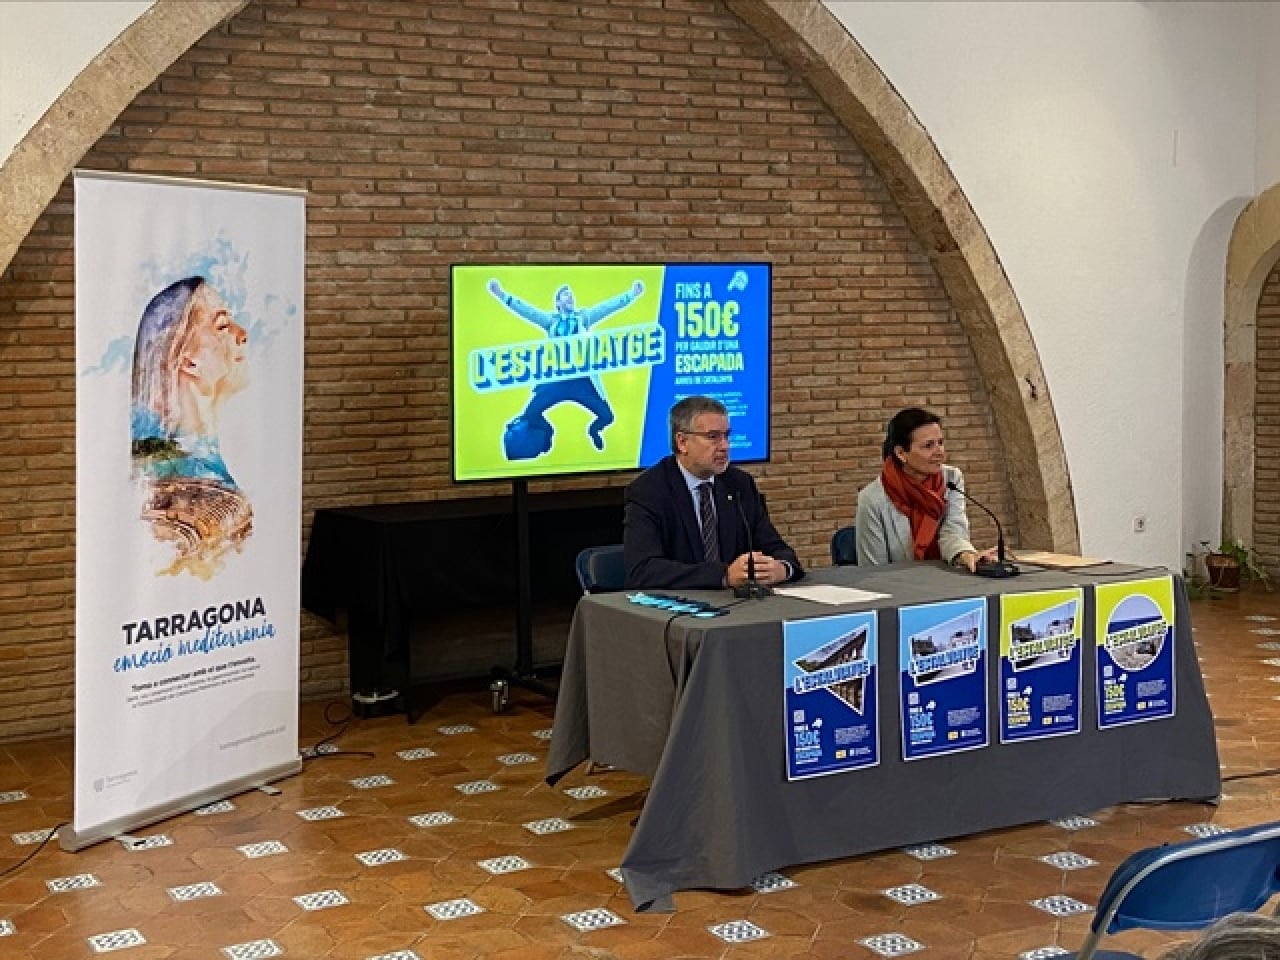 La directora general de Turisme de la Generalitat de Catalunya, Marta Domènech, i l’alcaldede Tarragona, Pau Ricomà, han presentat aquesta campanya turística ‘L’Estalviatge’